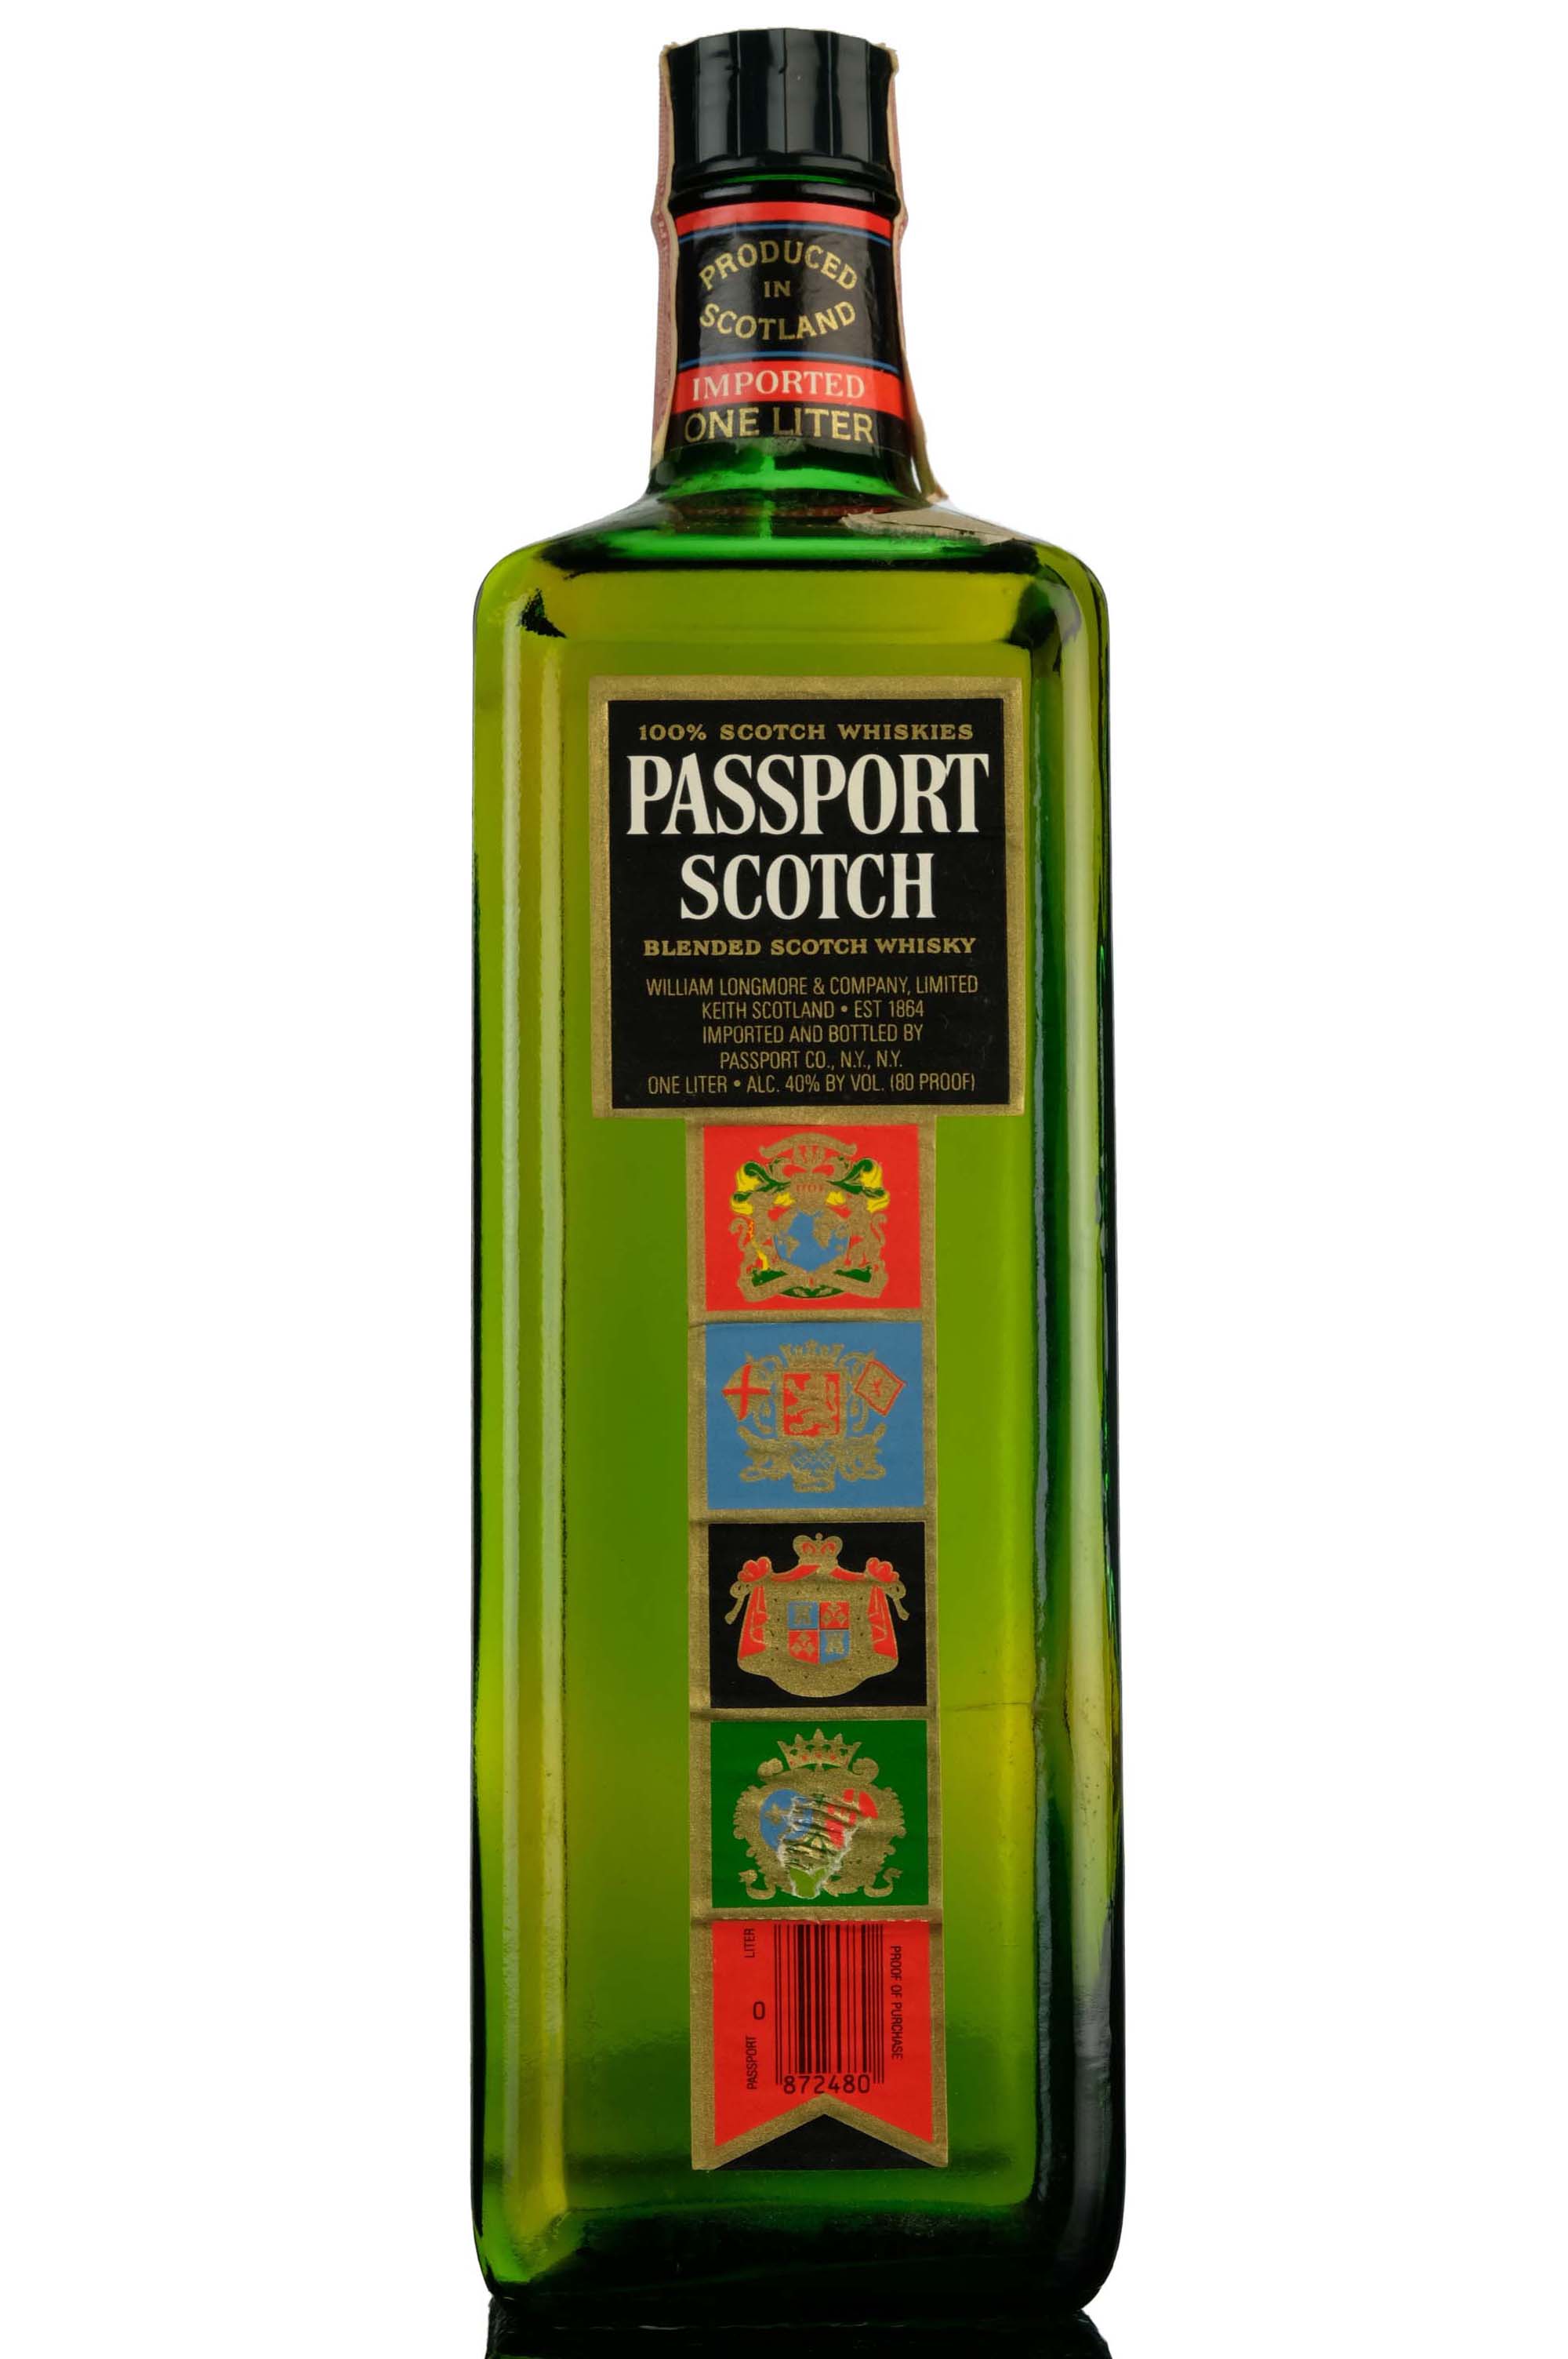 Passport Scotch - 1 Litre